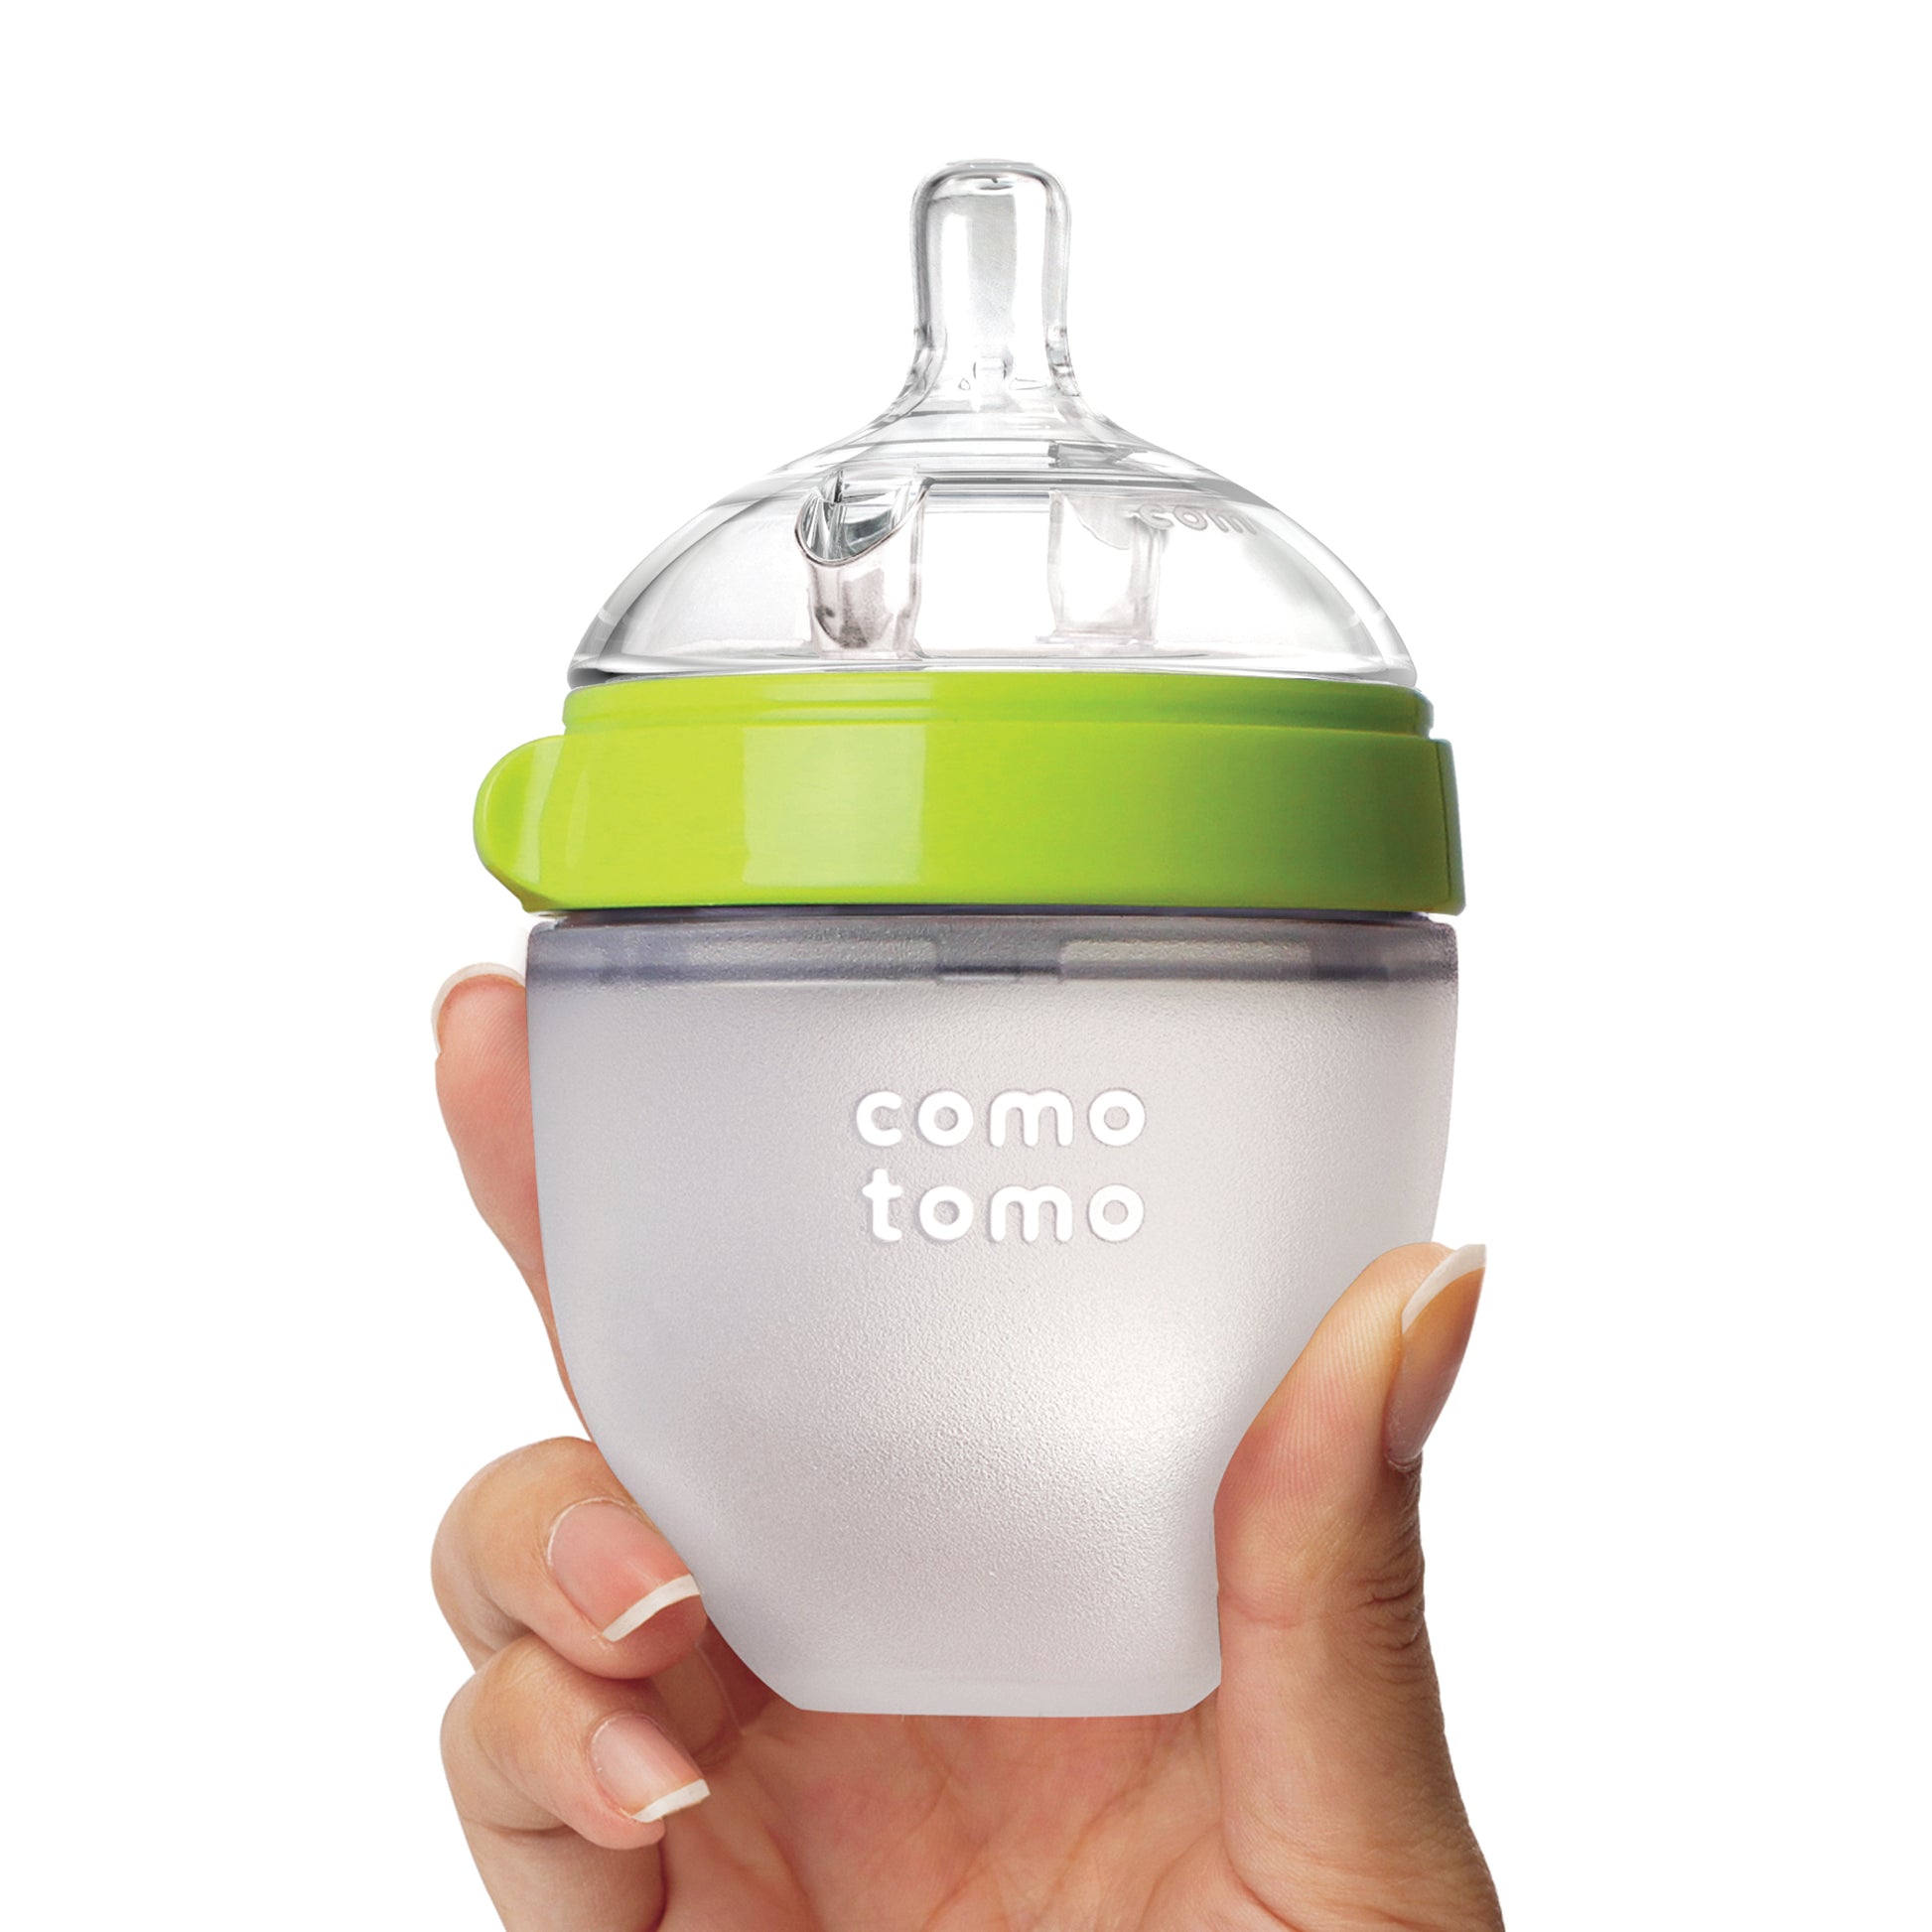 Comotomo - Natural Feel Baby Bottle (Single Pack) - Green & White,150 ml